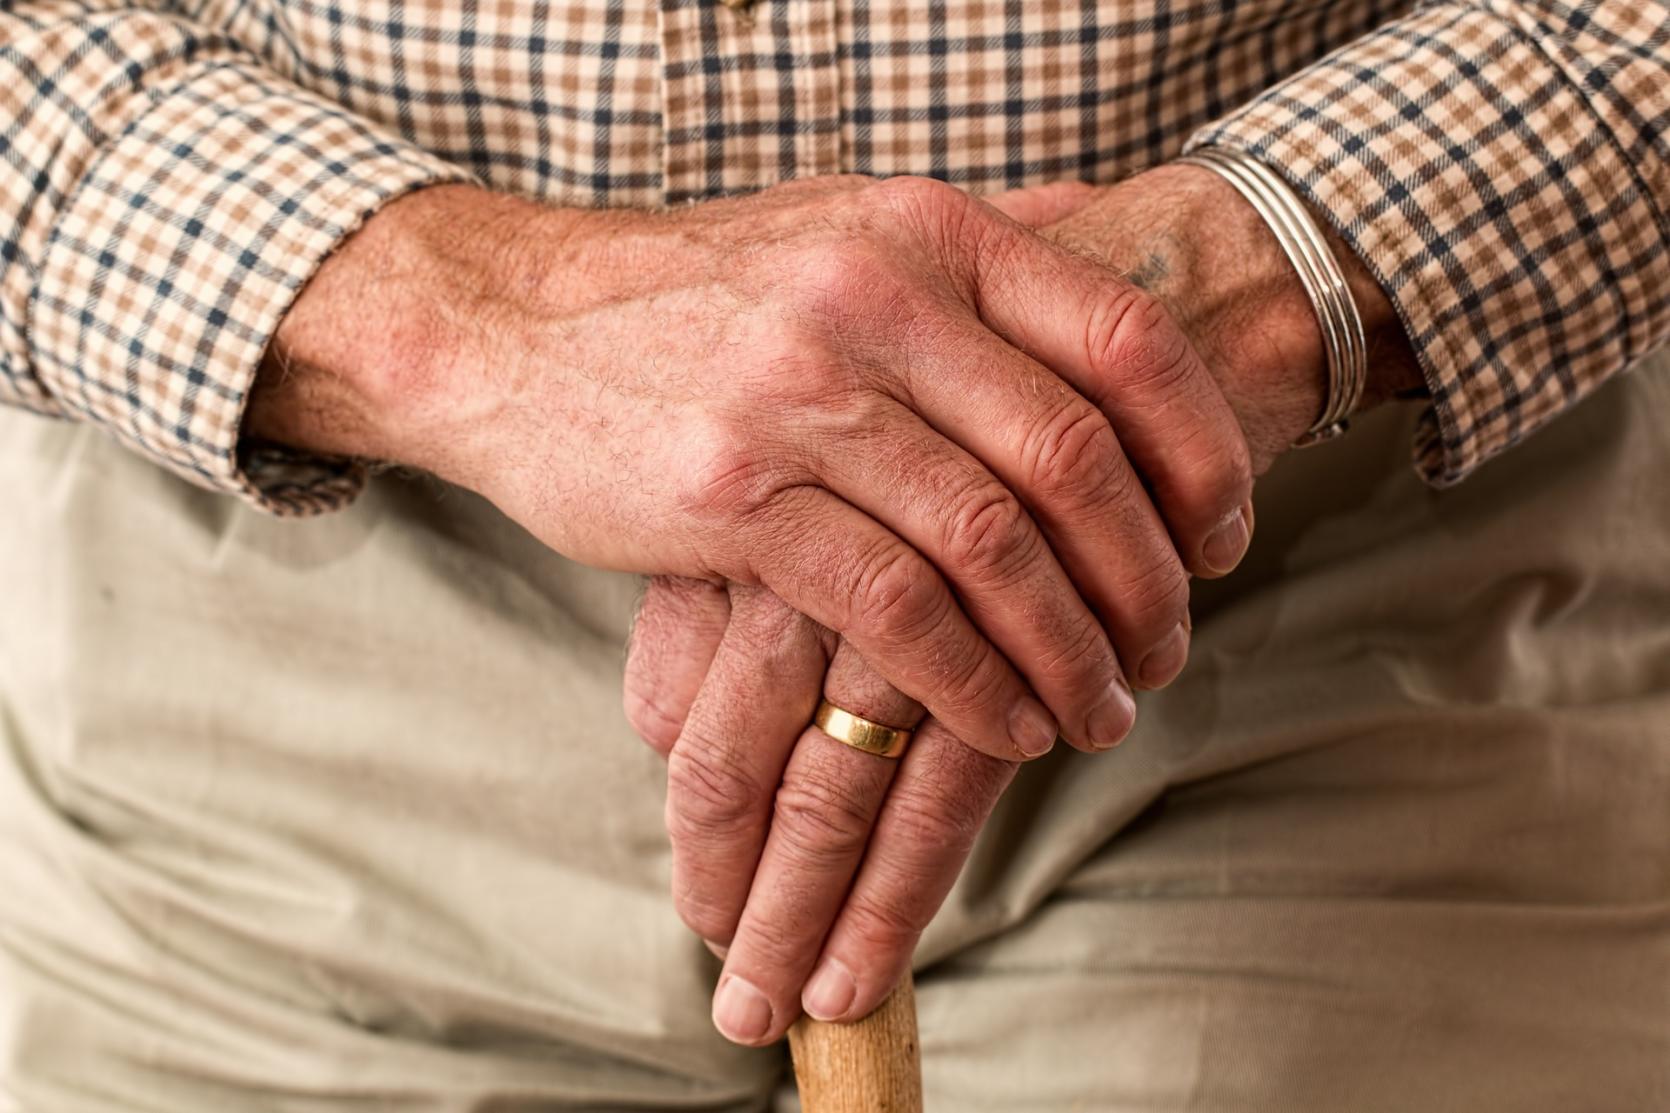 An image of an elderly man's hands.